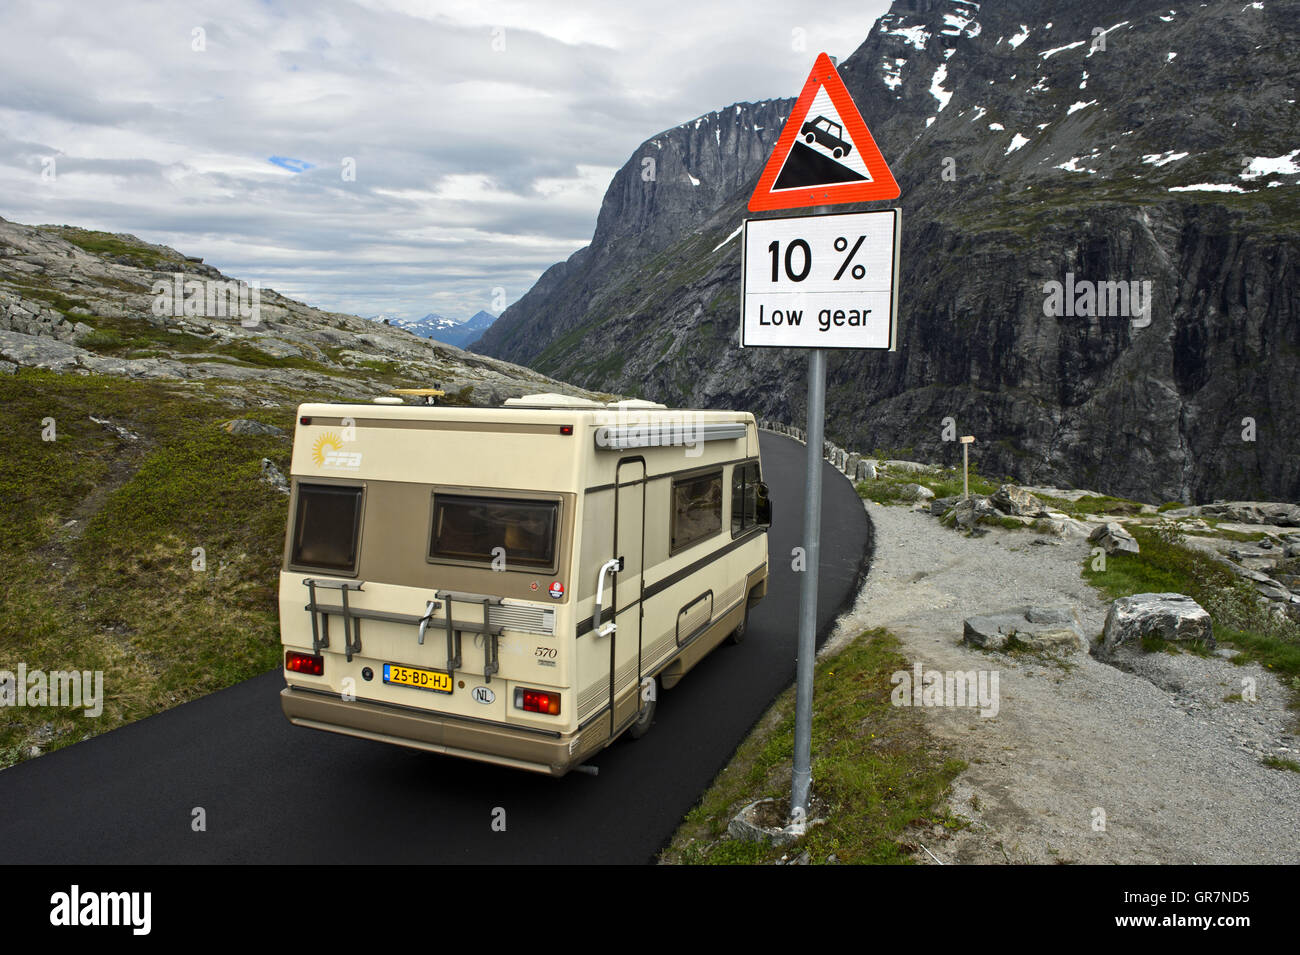 Caravane voiture passe une route pour un signe d'avertissement classe Segment raide de la route touristique nationale Trollstigen, Norvège Banque D'Images